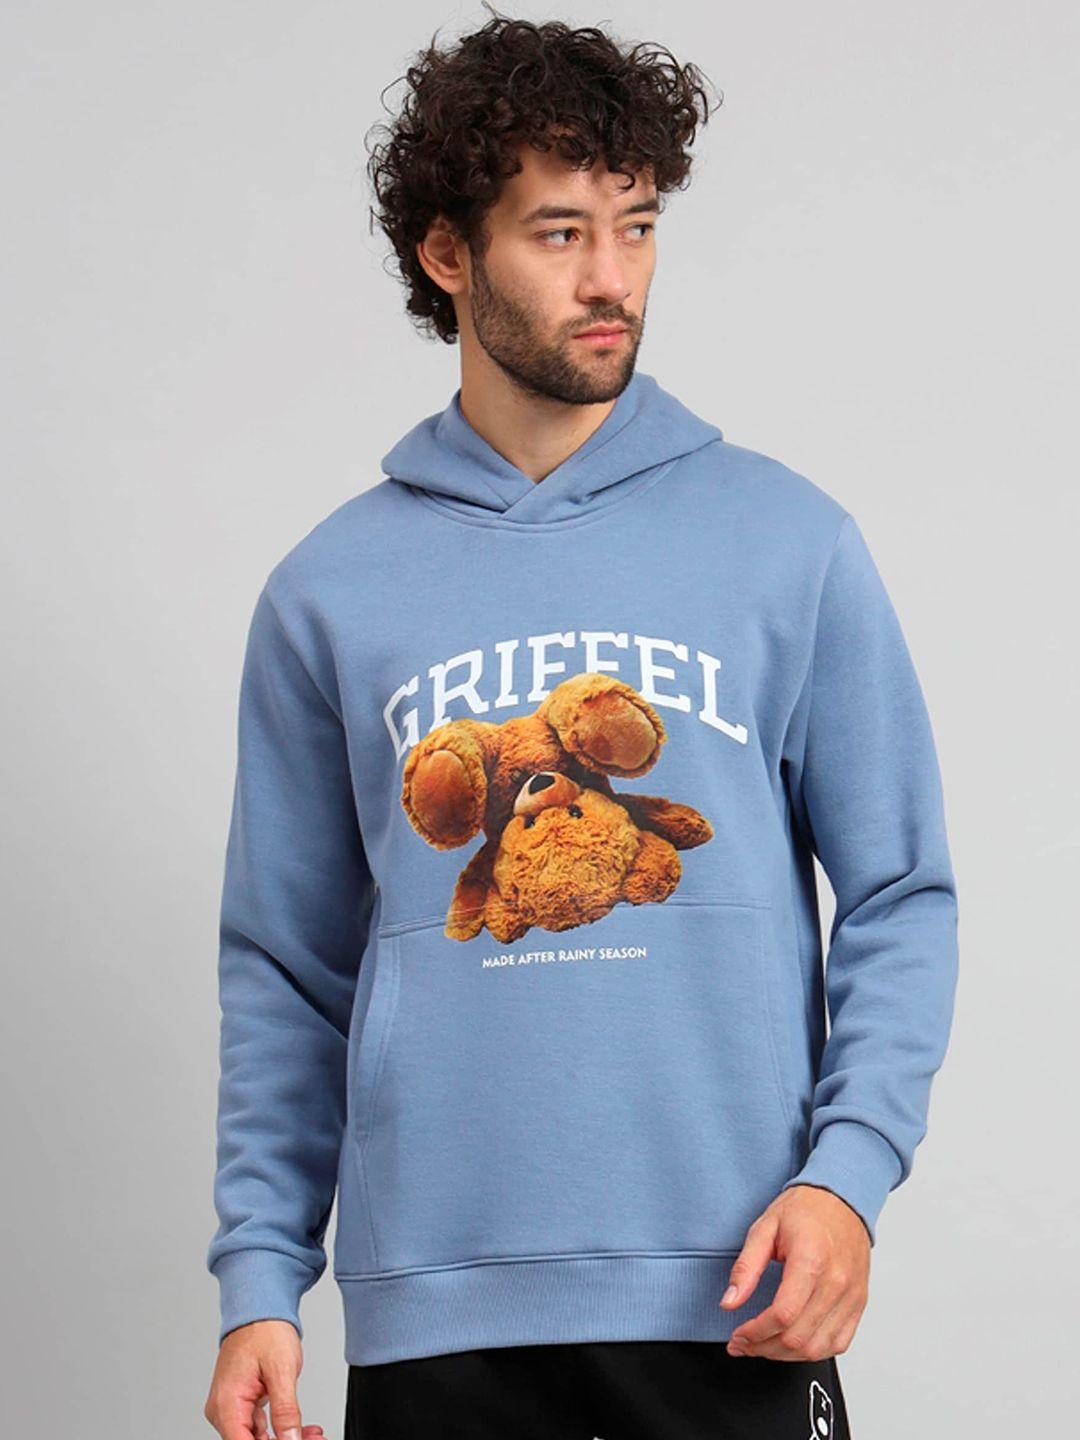 griffel-brand-logo-printed-hooded-fleece-sweatshirt